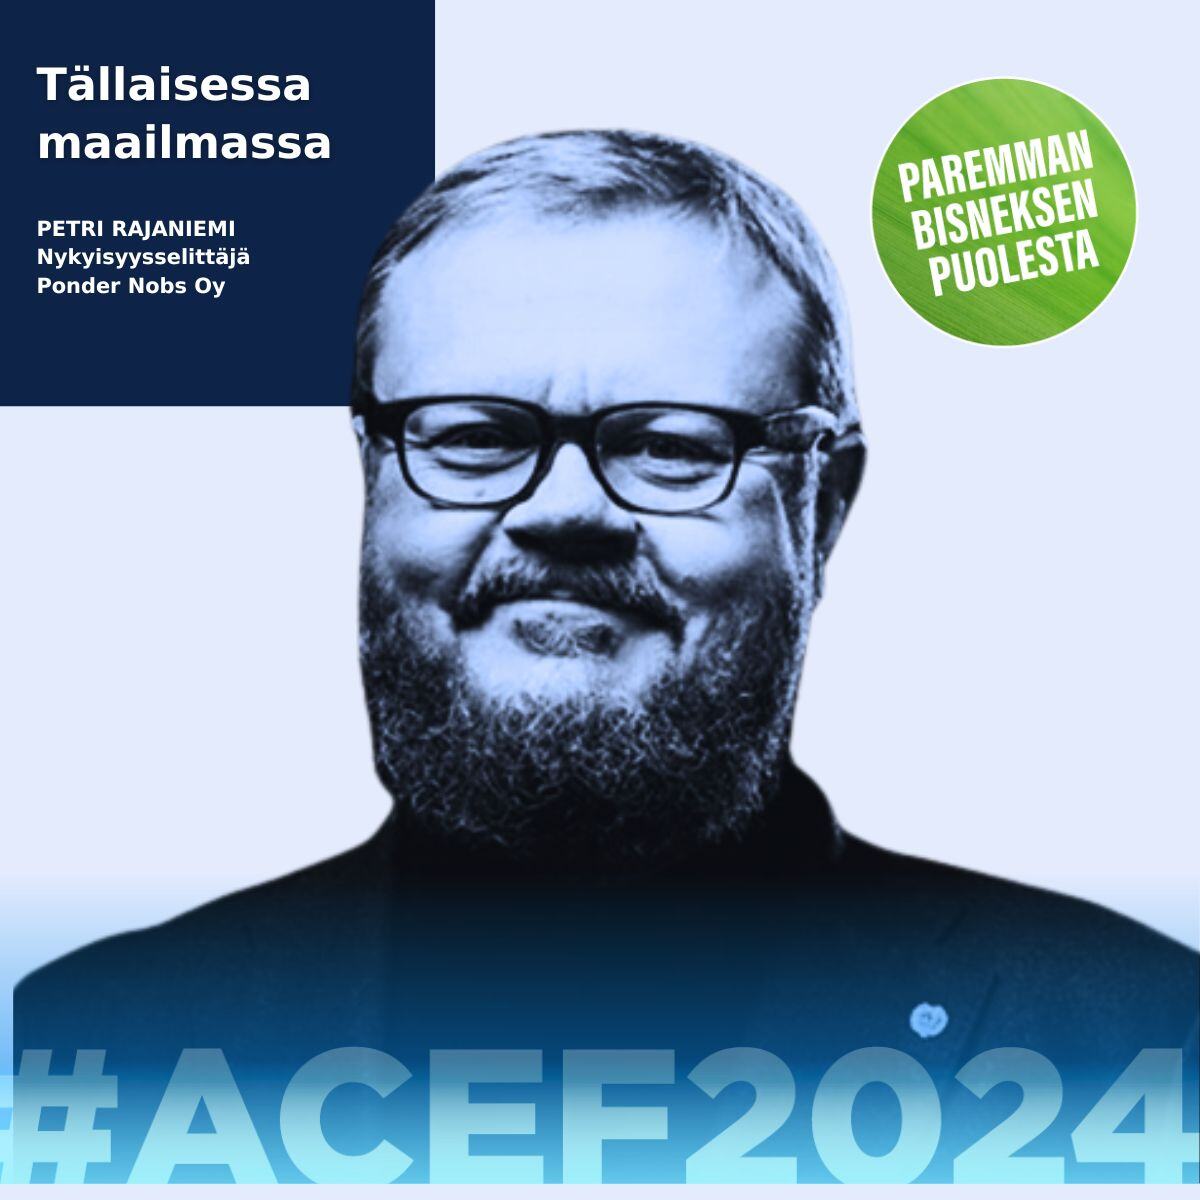 ACEF2024:ssä 30.5. nykyisyysselittäjä Petri Rajaniemi Ponder Nobs Oy:n puheenvuoro Tällaisessa maailmassa.